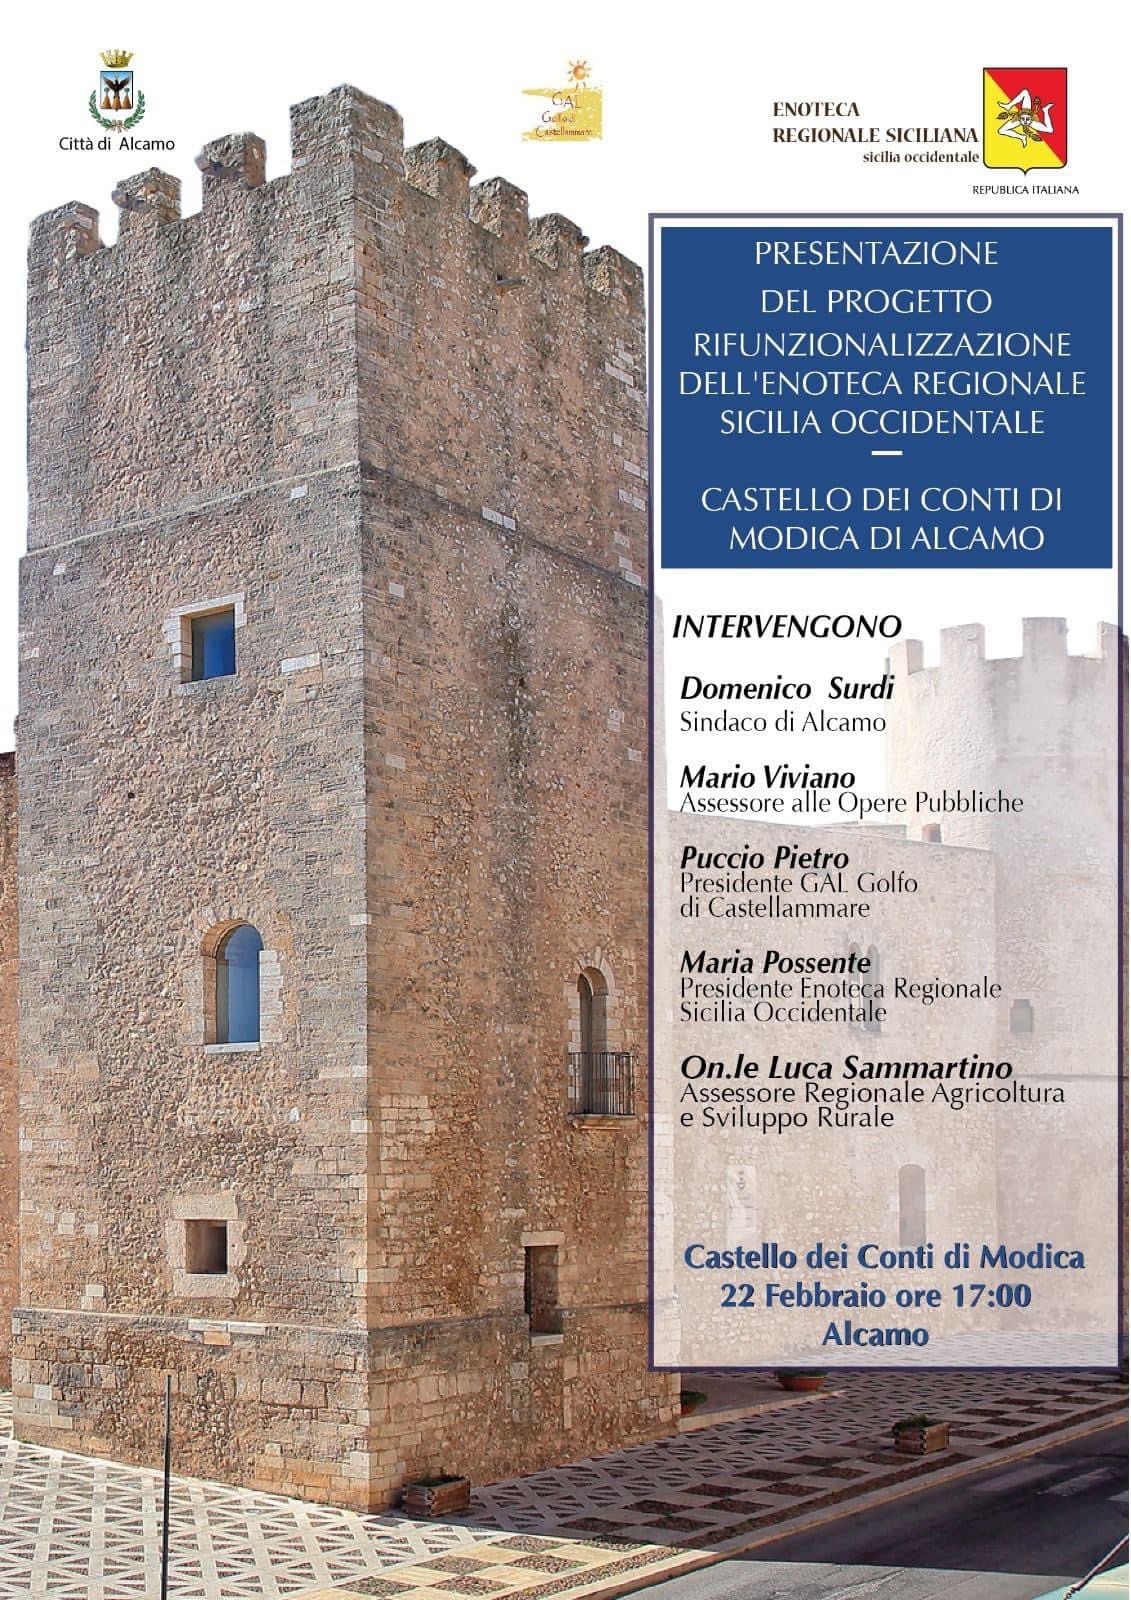 Nuovi progetti per il Castello e il vino siciliano.